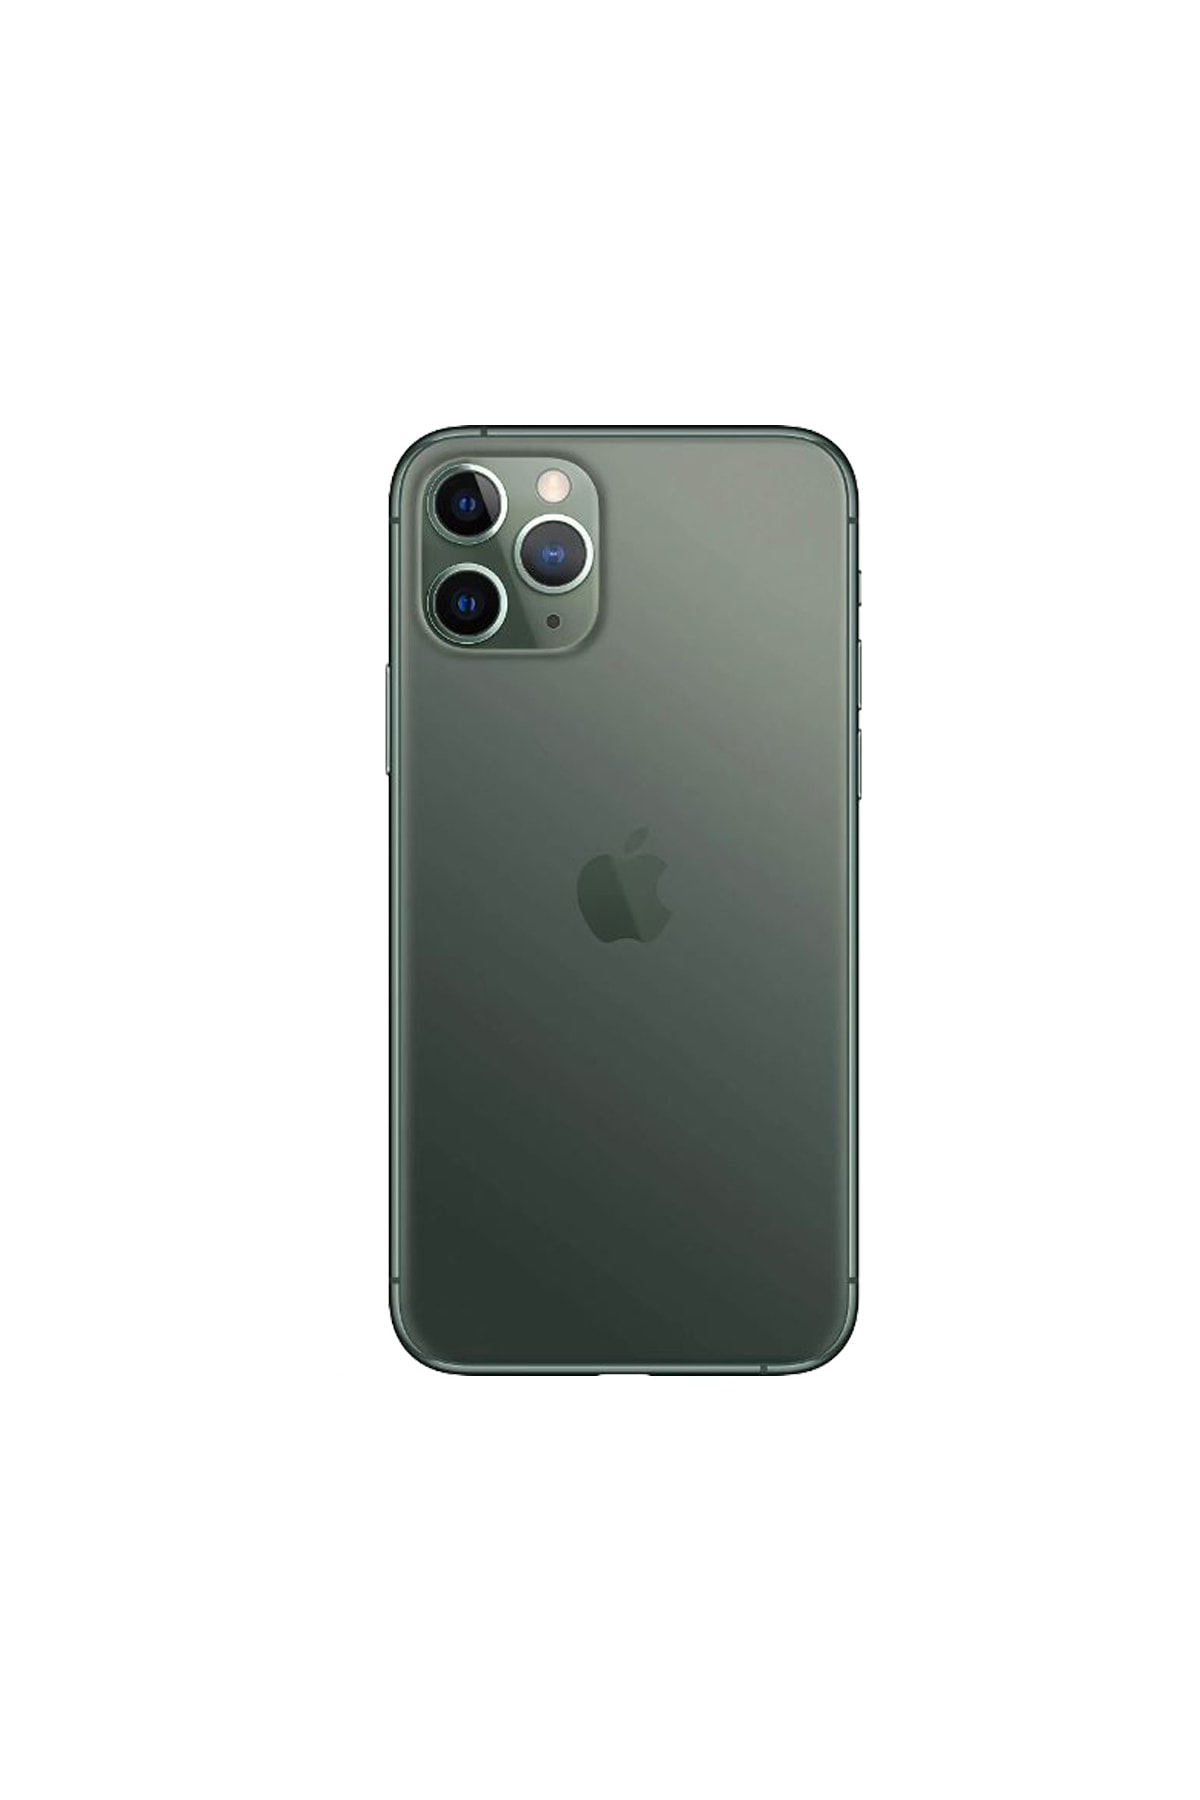 Apple Yenilenmiş Iphone 11 Pro 256gb C Kalite